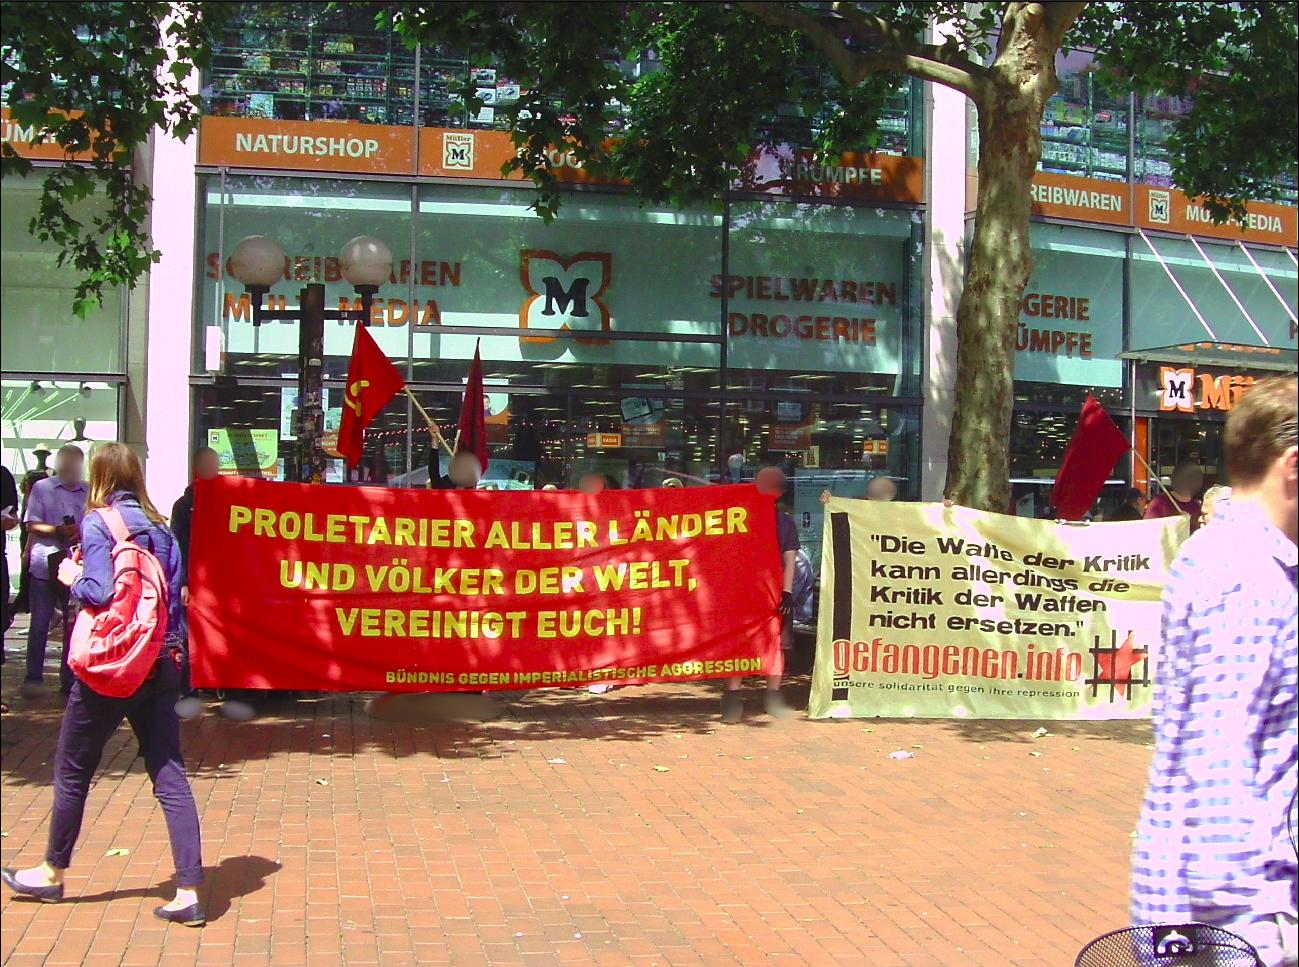 19 juni kundgebung hamburg bündnis gegen imperialistische aggression 2